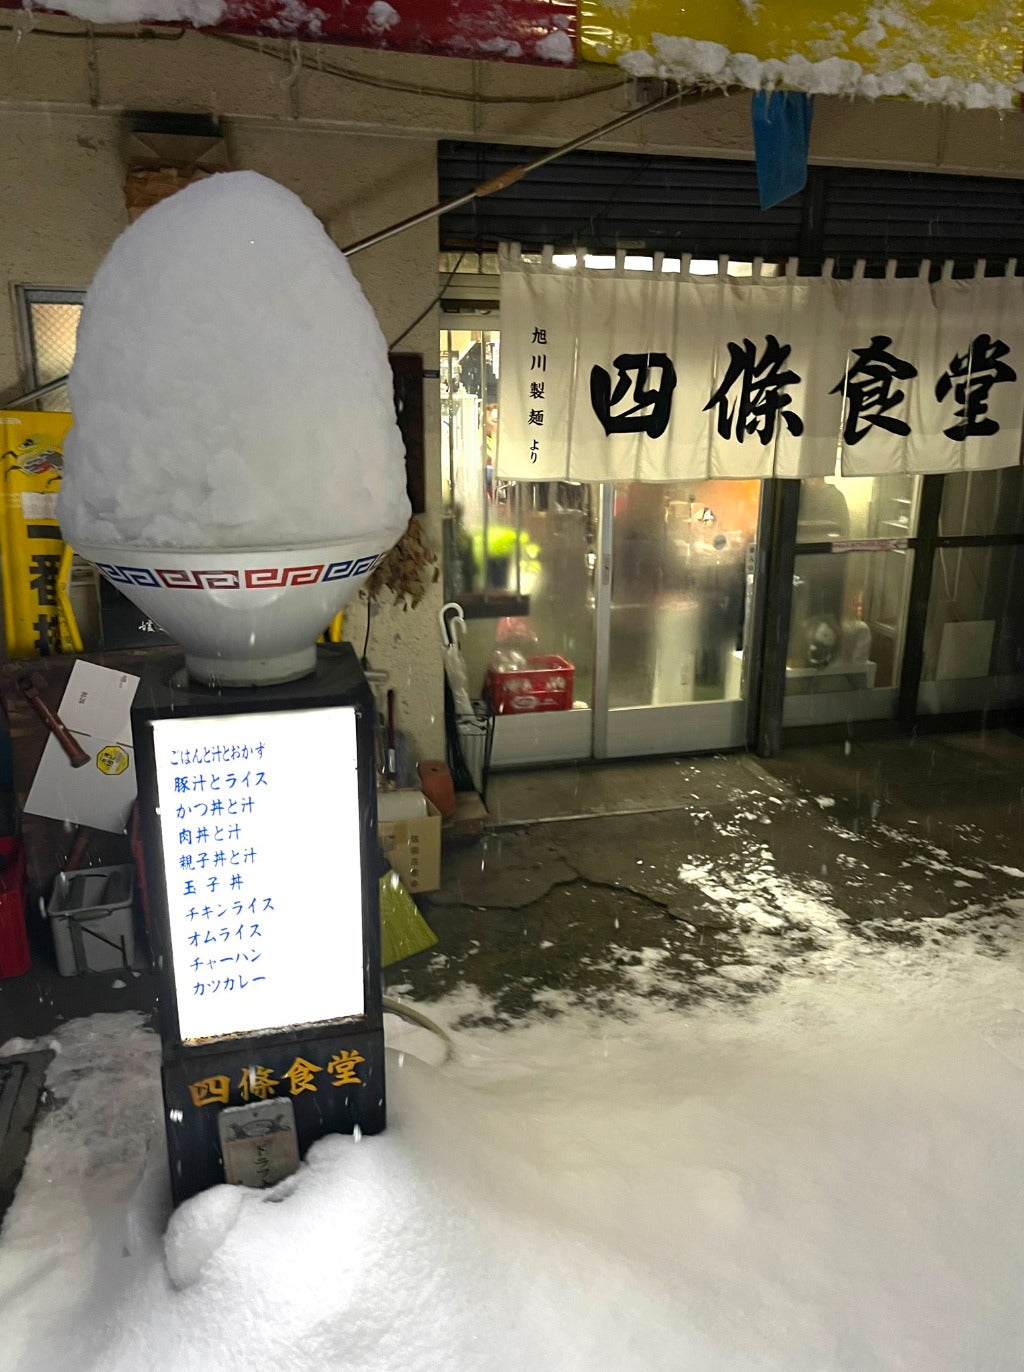 ราเมนญี่ปุ่น น้ำแข็งไส หิมะ ฤดูหนาว ฮอกไกโด